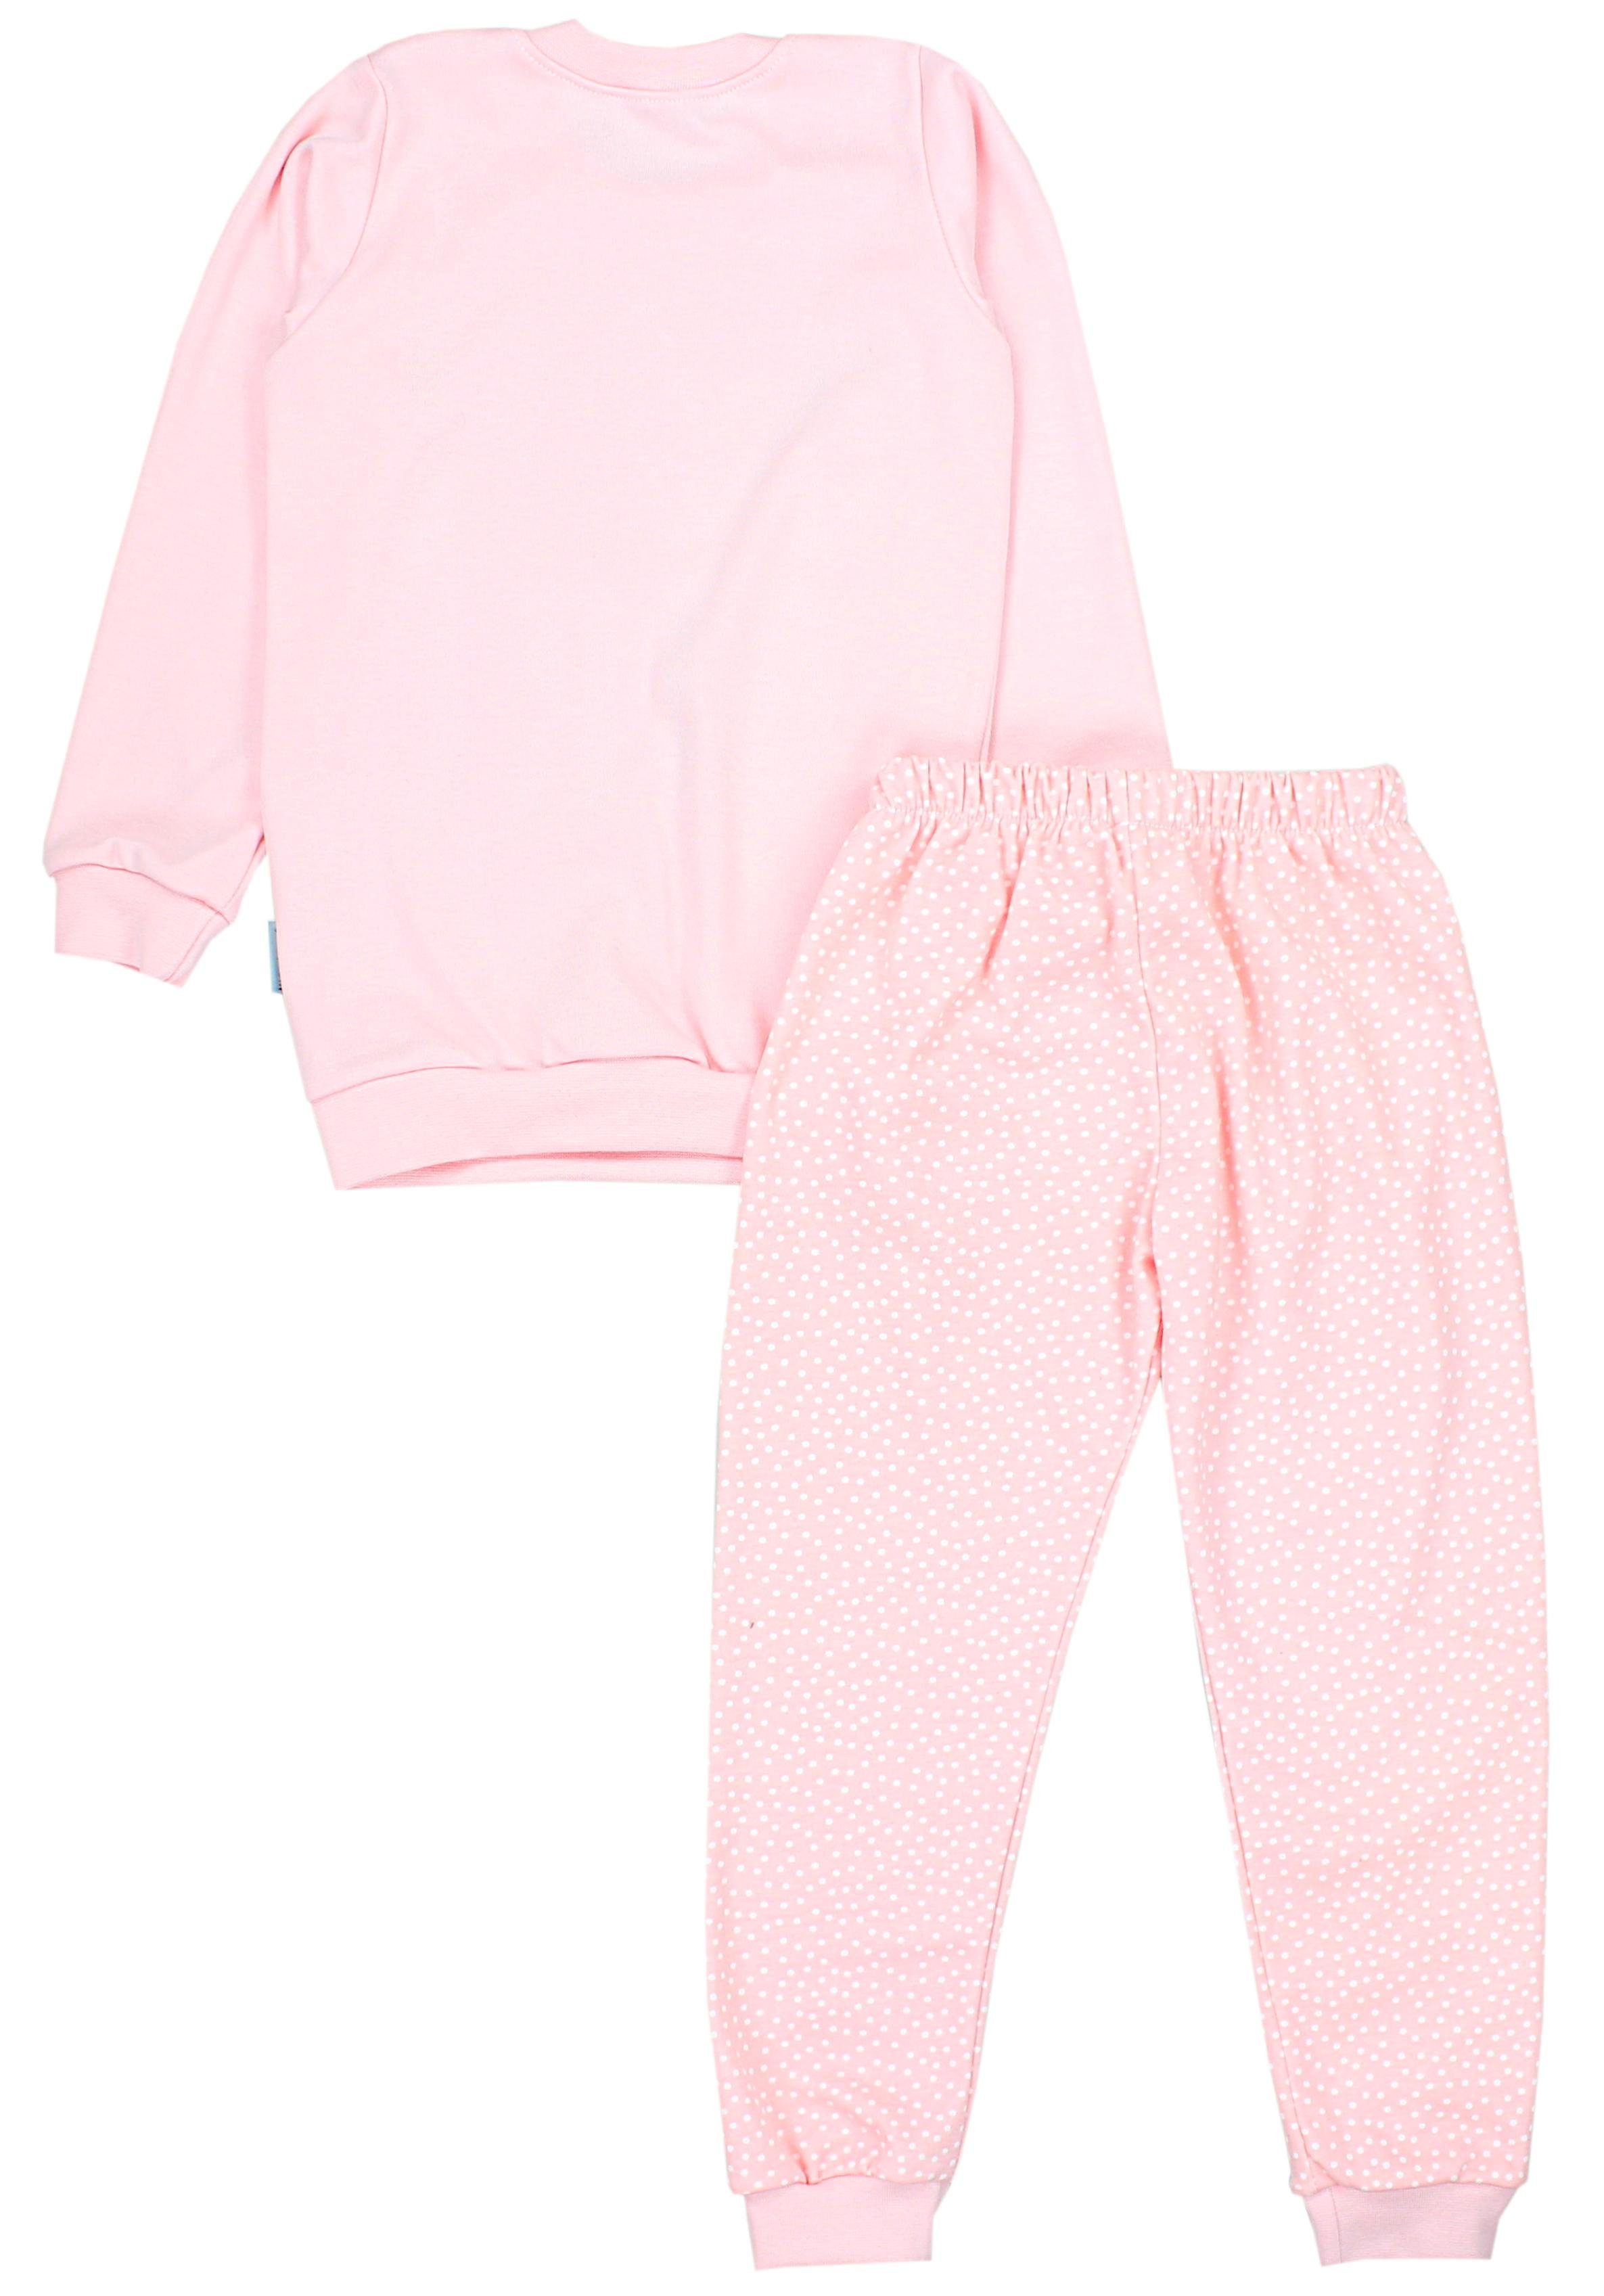 Langarm 2-teilig Mädchen Schlafanzug Aprikose Nachtwäsche Set TupTam Schlafanzug GIRL COOL / Pyjama Tupfen Kinder